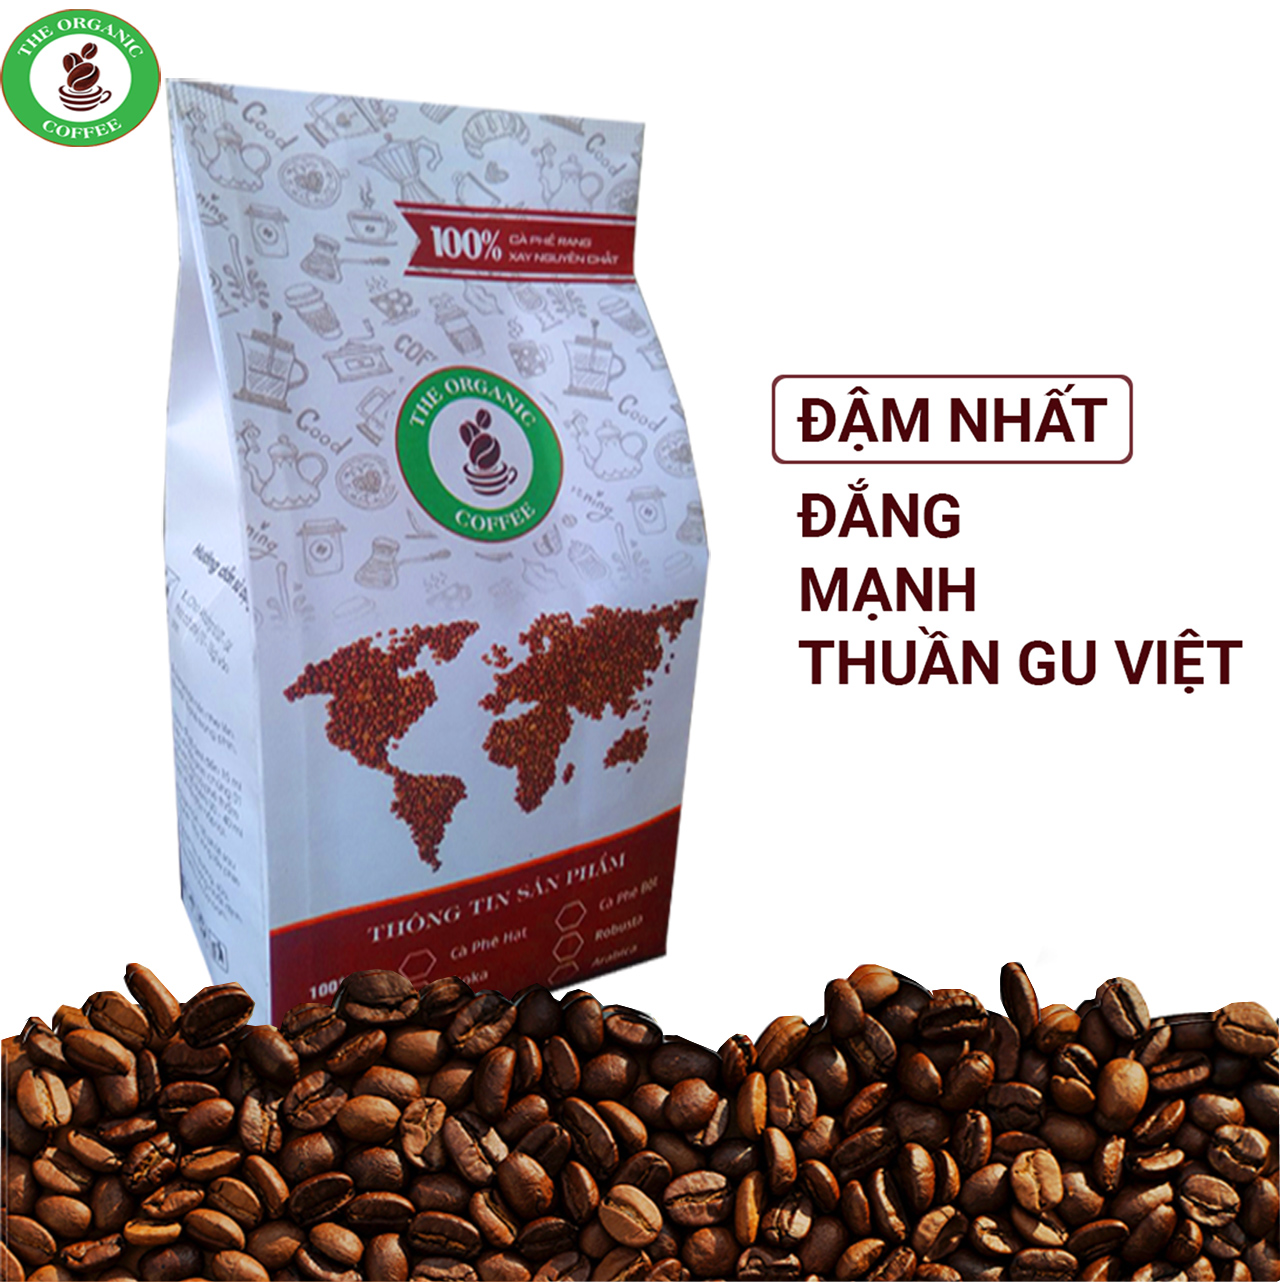 FREESHIP MAX -1kg cà phê rubusta,100% rang mộc nguyên chất,2 bịch 500gr.